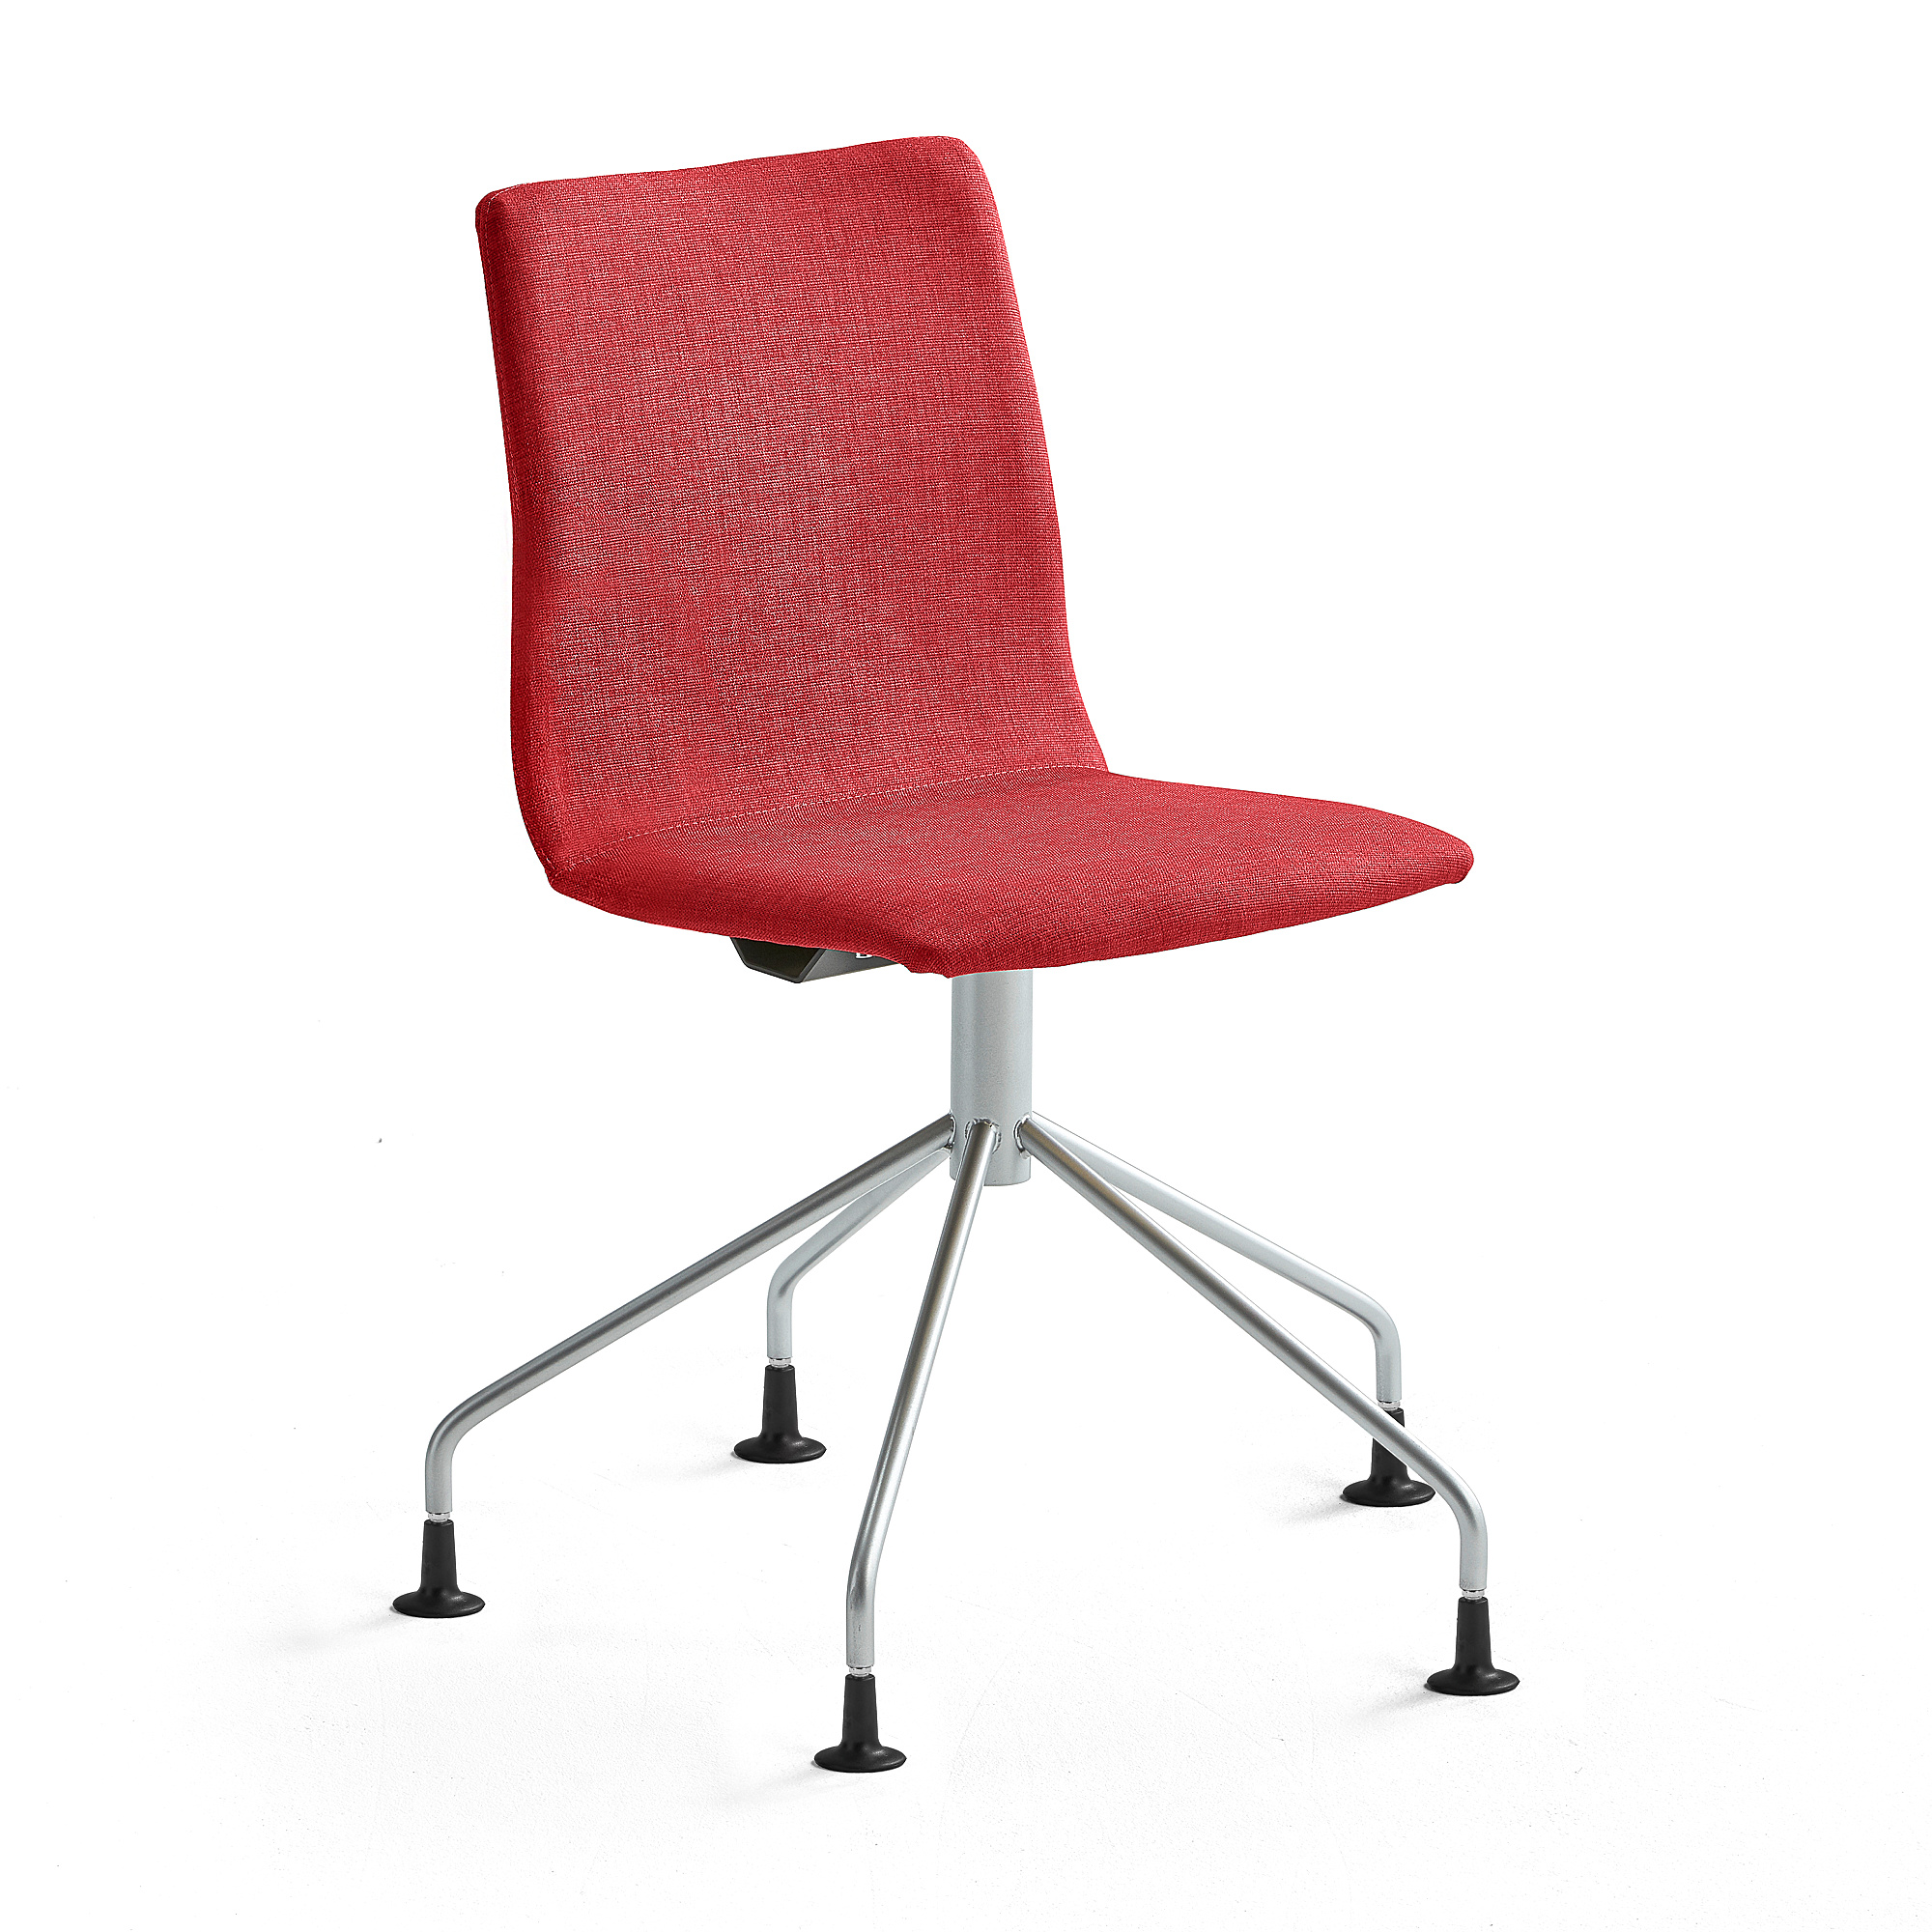 Konferenčná stolička OTTAWA, pavúčia podnož, červená, šedá